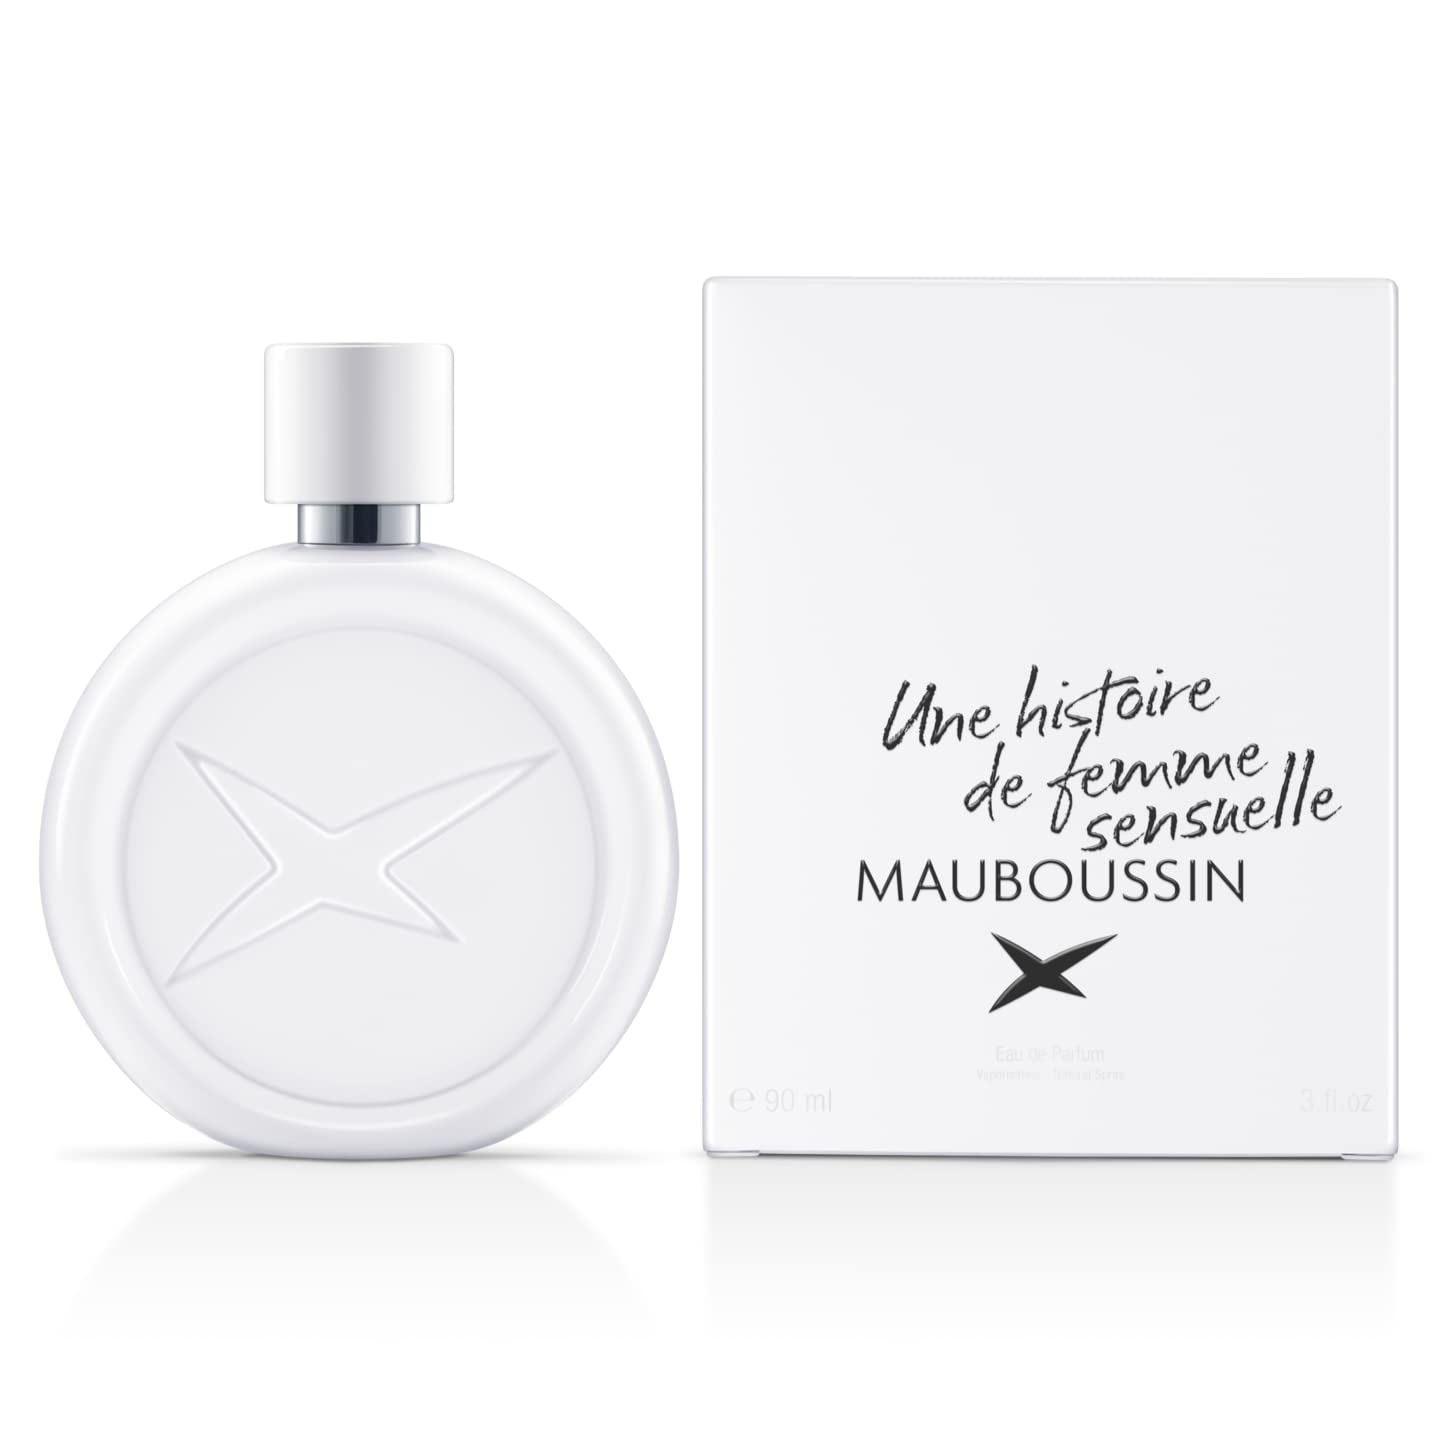 en vente Mauboussin - Une Histoire de Femme Sensuelle 90ml - Eau de Parfum Femme - Senteur Florale, Musquée & Gourmande myuOl8beQ mode